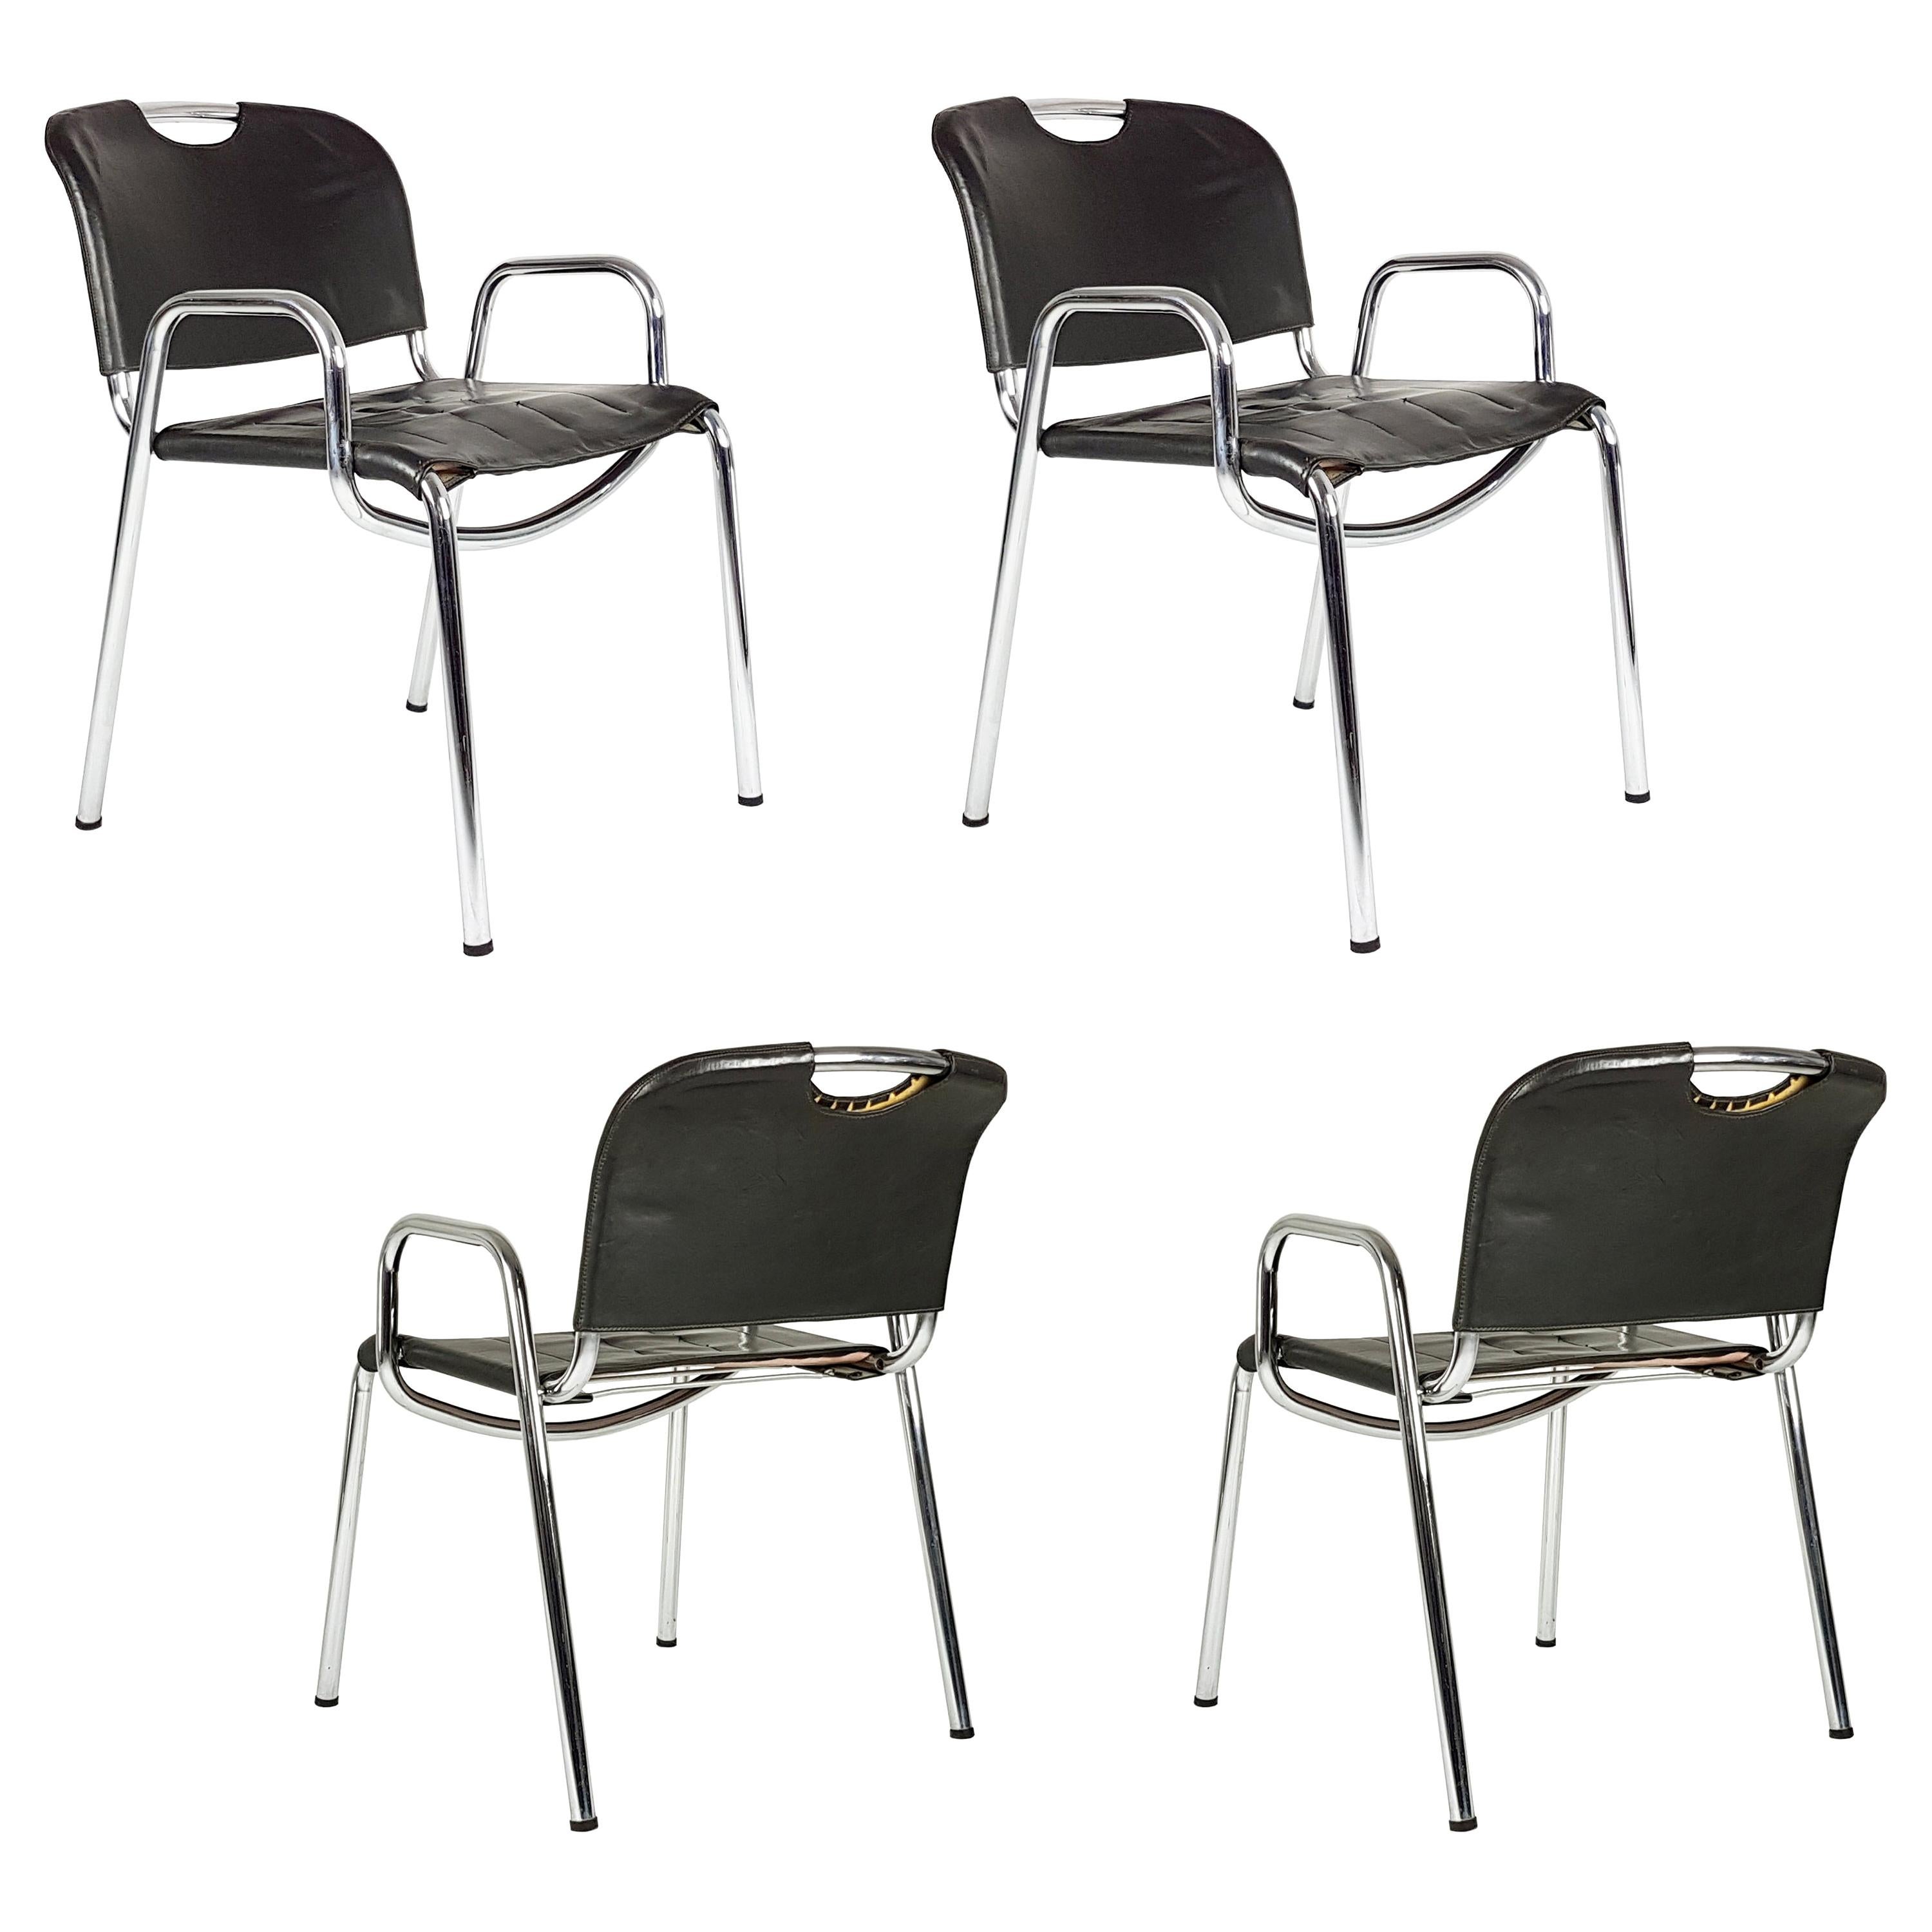 Metal, Brown Leather Castiglietta Chairs by A. Castiglioni for Zanotta, Set of 4